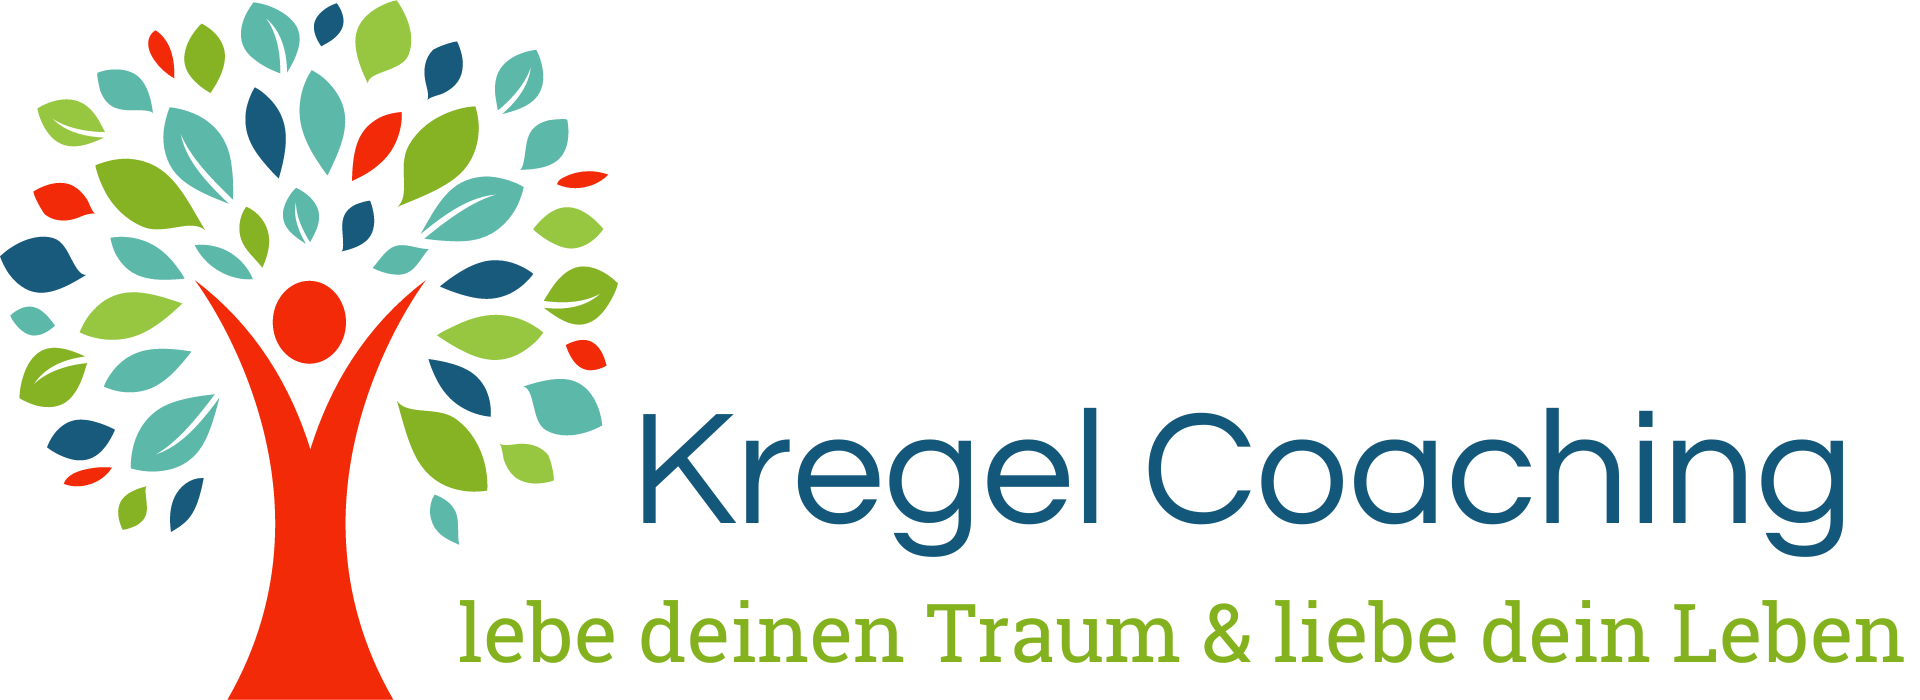 Kregel Coaching